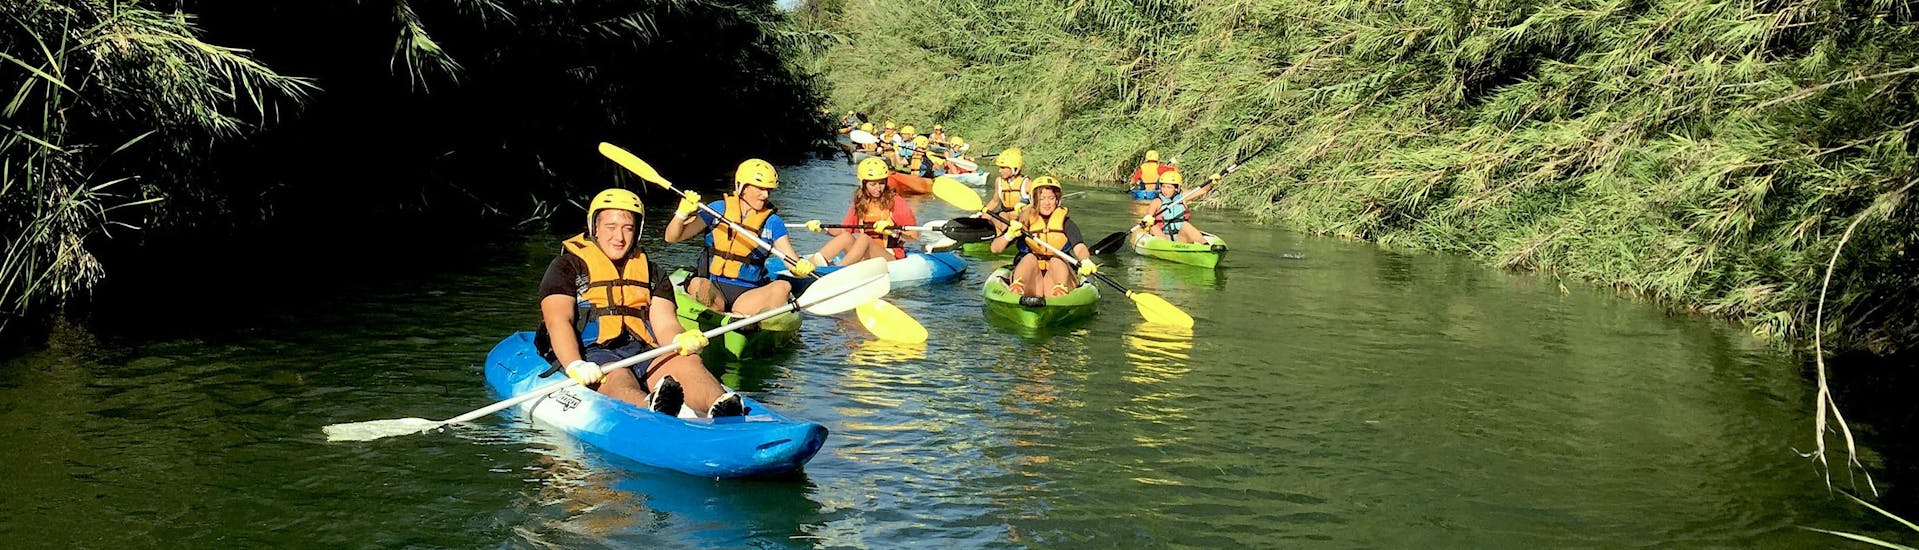 Kayak Tour- Río Turia with Valencia Adventure - Hero image